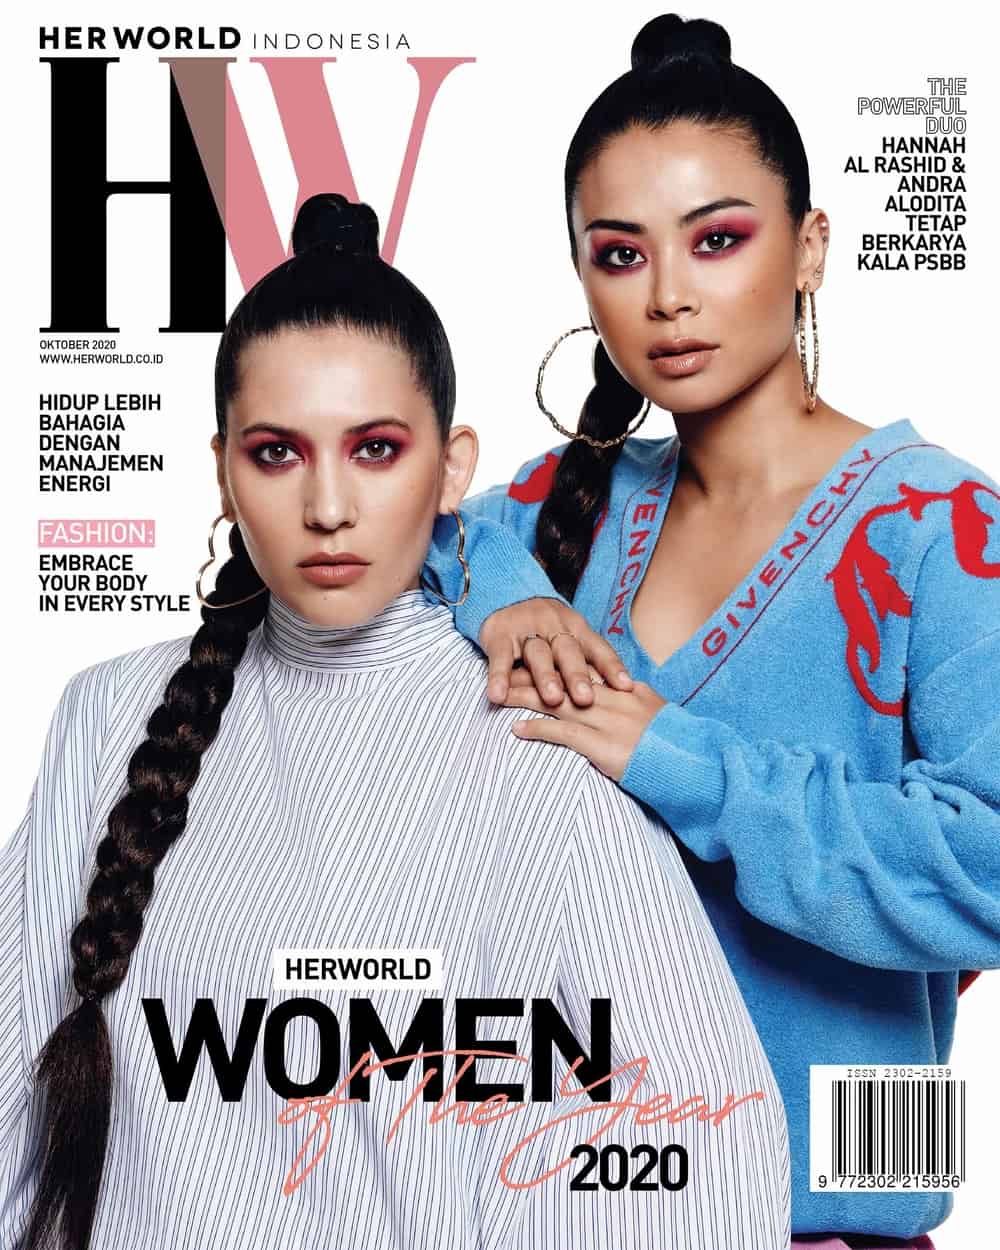 Hannah Al Rashid & Andra Alodita Cover Oktober 2020